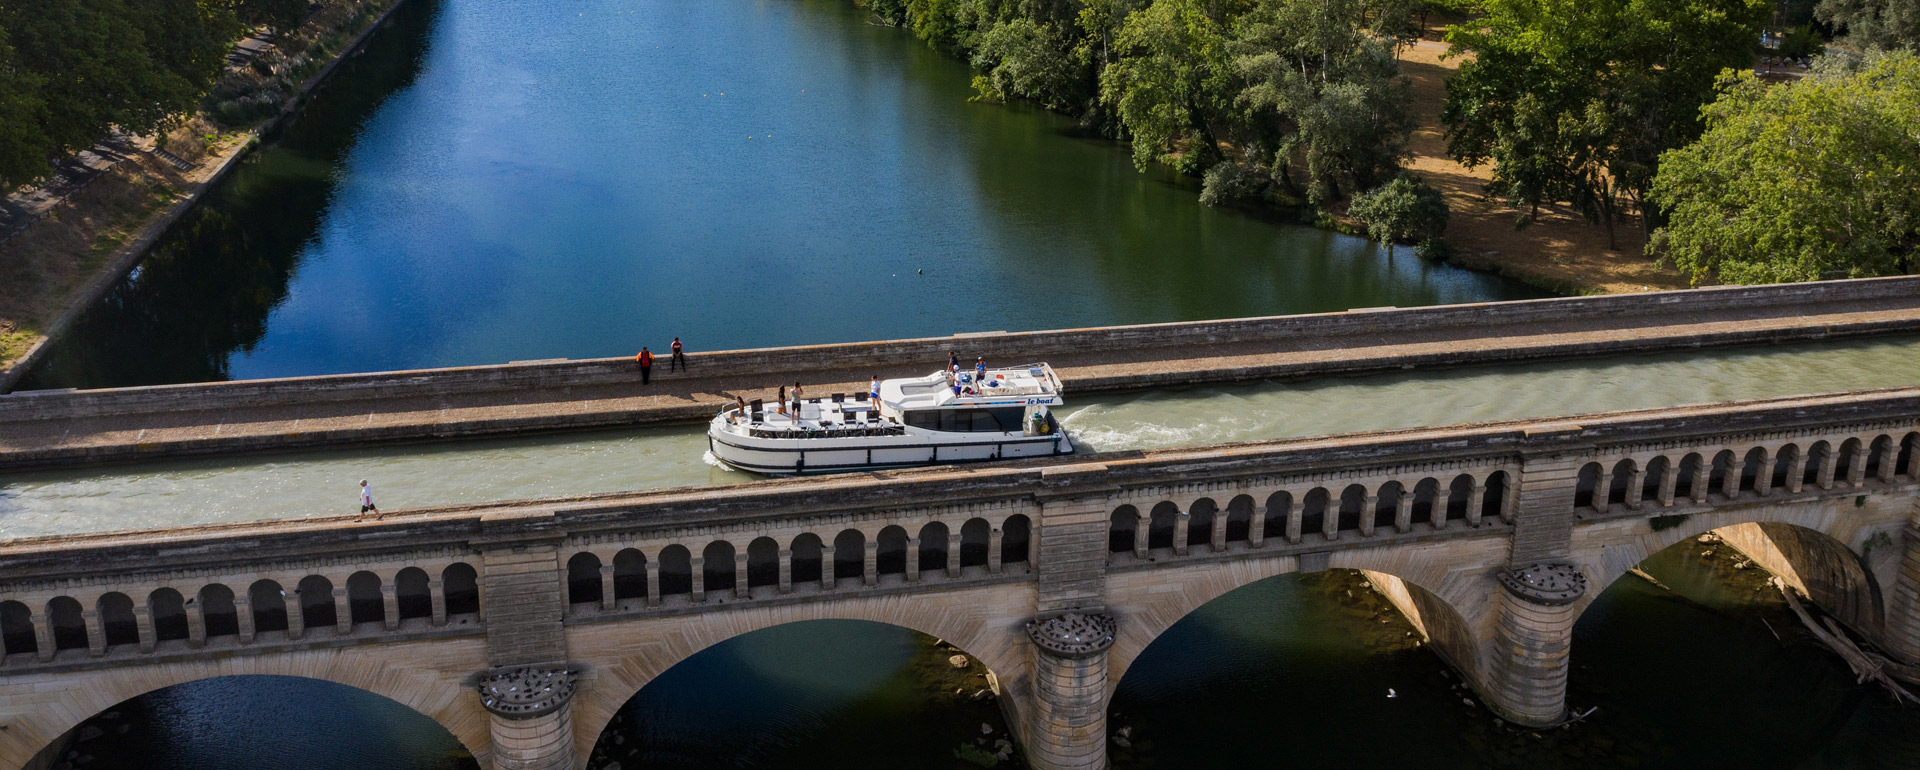 Pont-canal de l'Orb - Canal du Midi - Occitanie © Le Boat